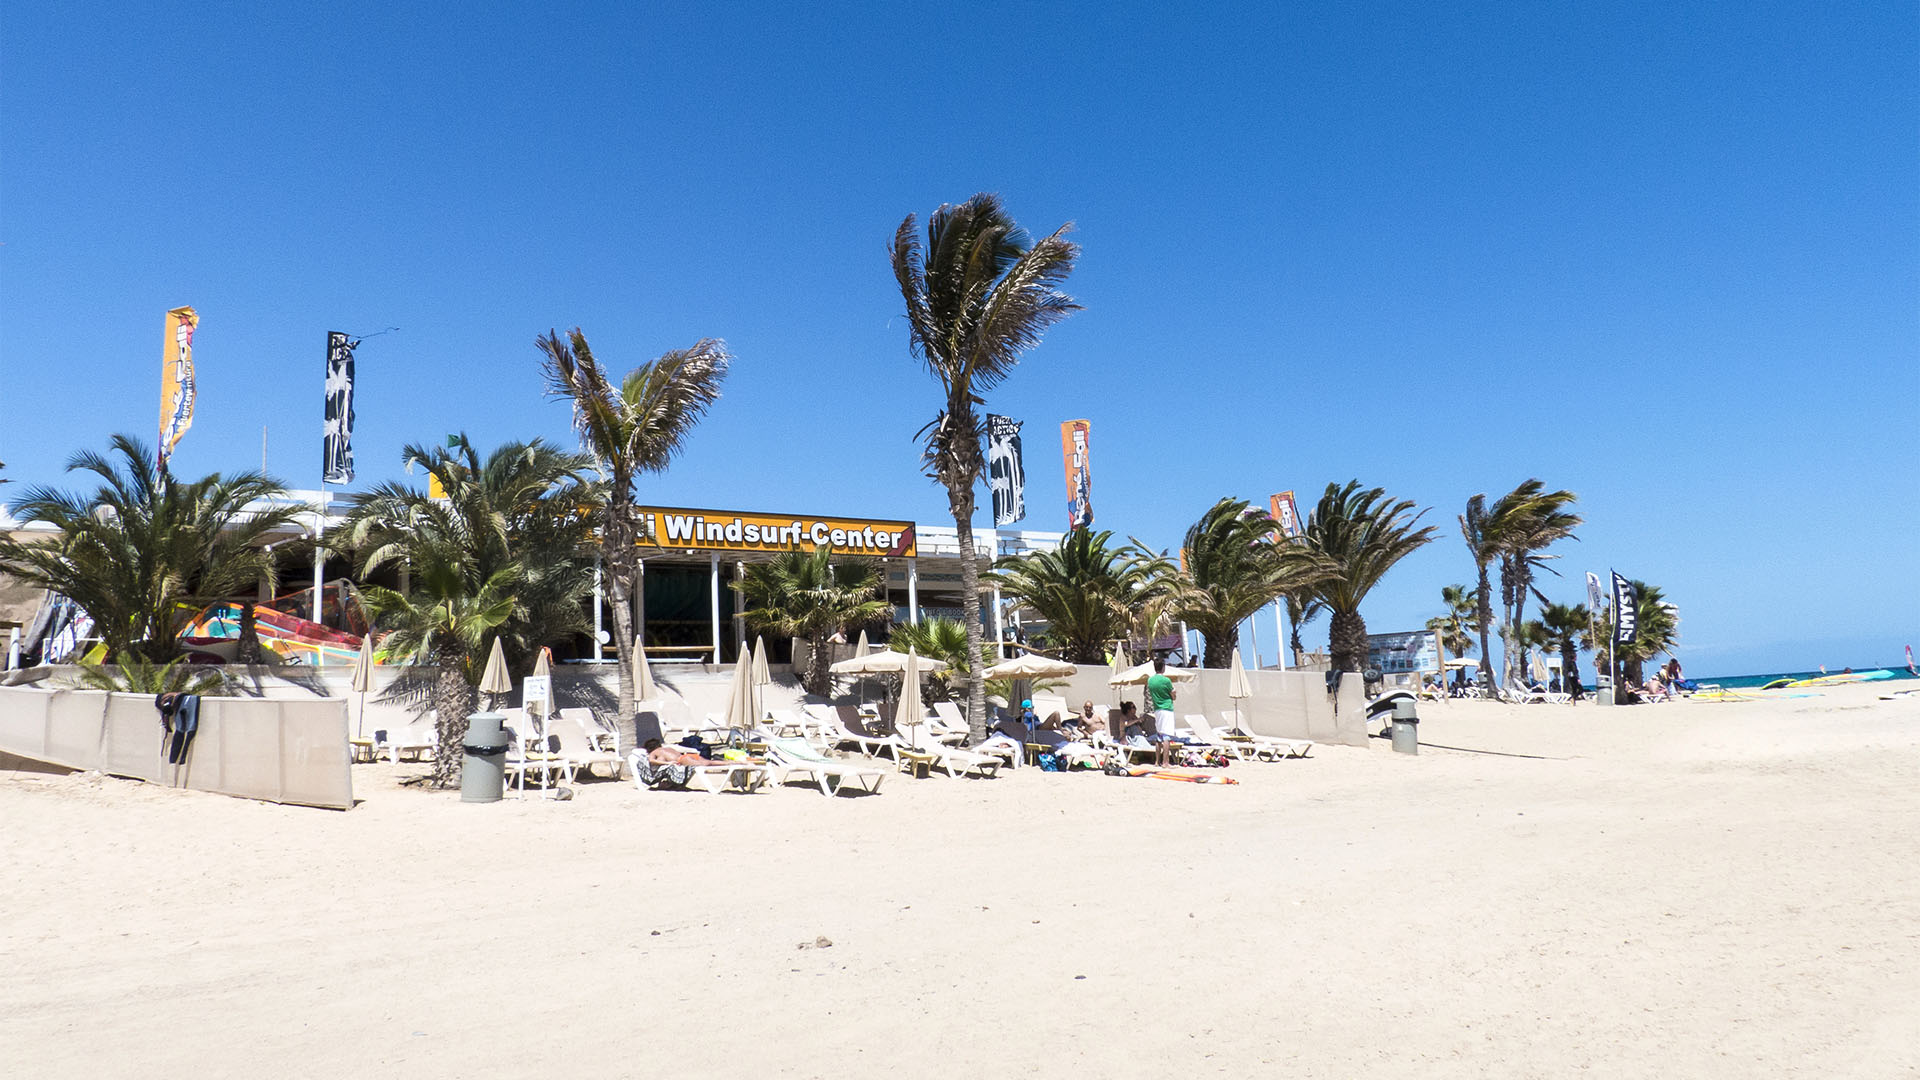 Die Strände Fuerteventuras: Costa Calma, Playa de la Barca.